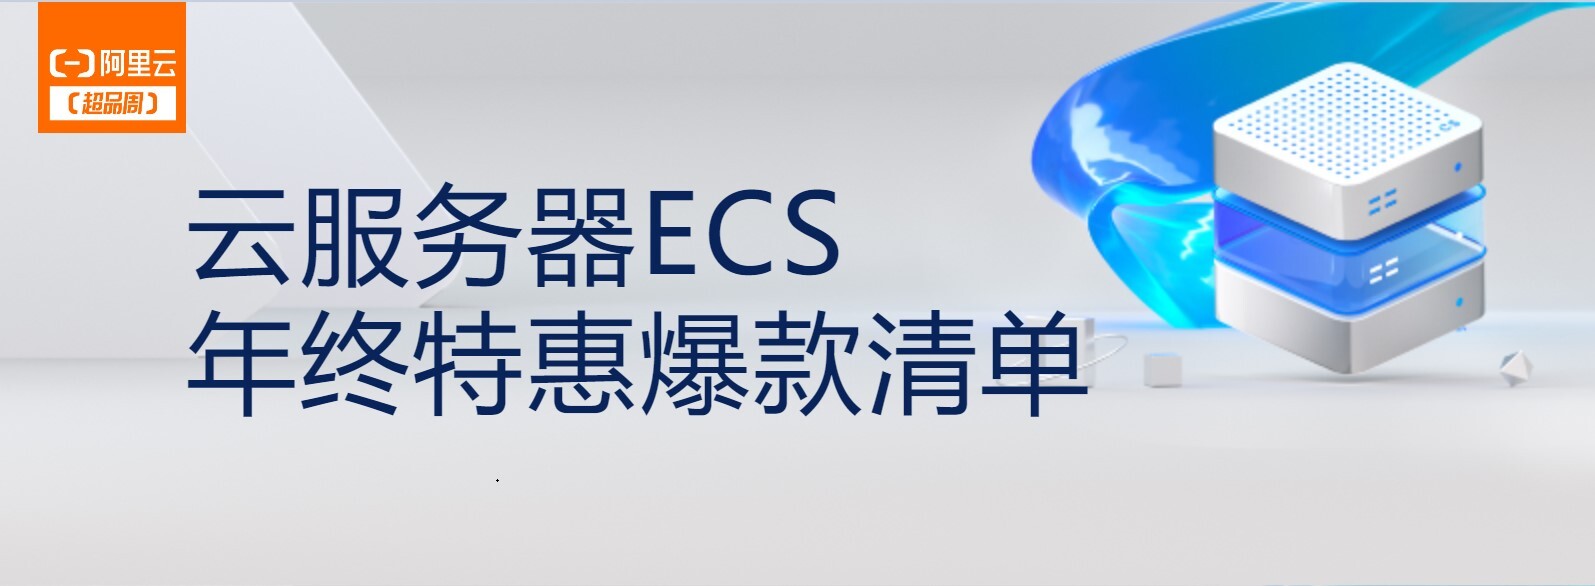 云服务器ECS年终特惠，老用户新购优惠低至4折